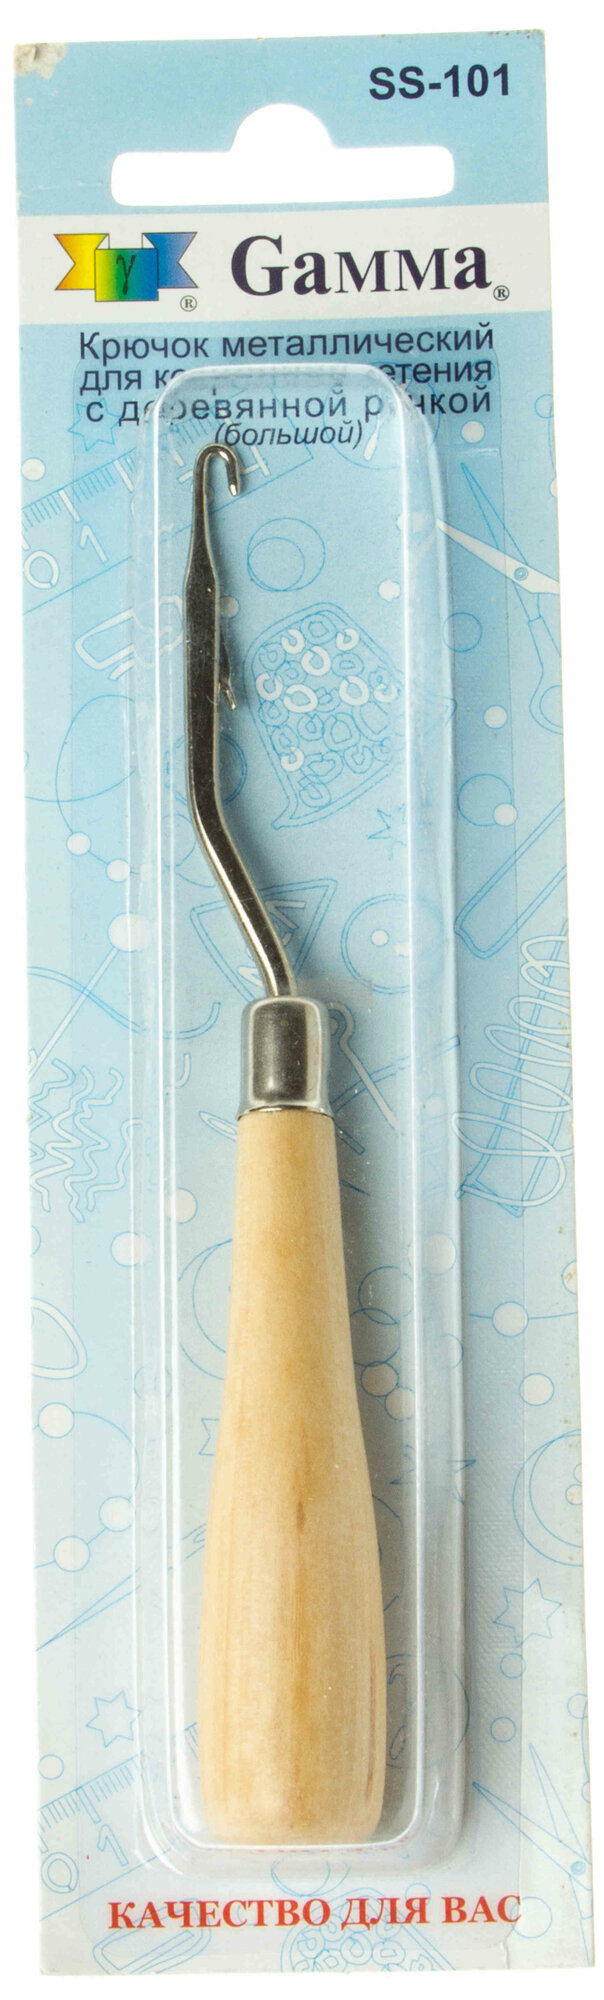 Крючок GAMMA для коврового плетения, металлический, с деревянной ручкой, 1шт